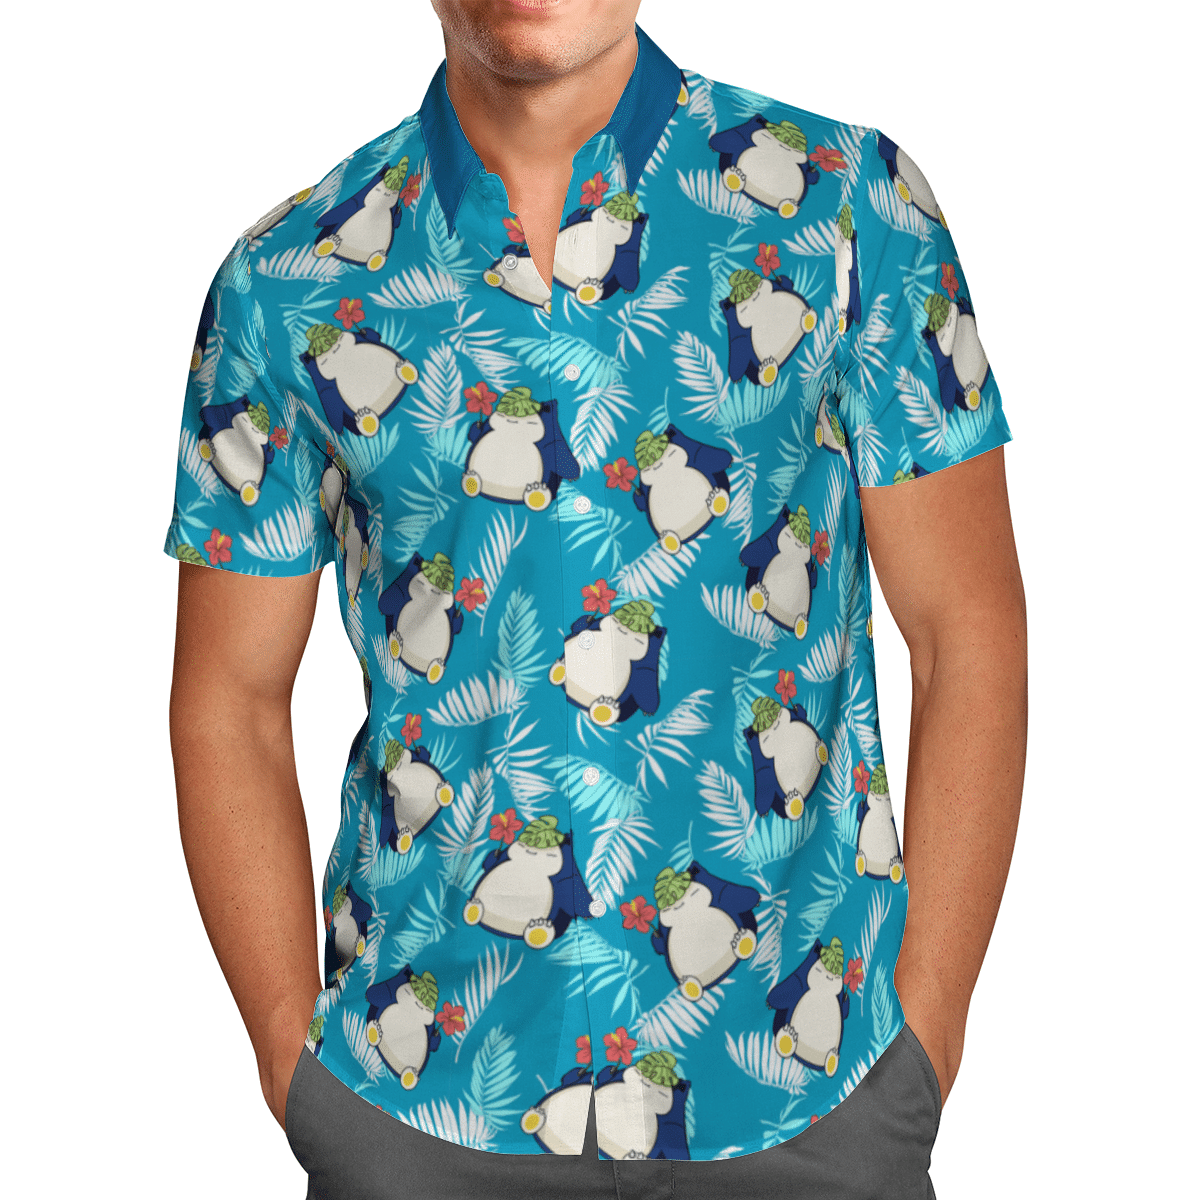 Snorlax hawaiian shirt and short 2.1